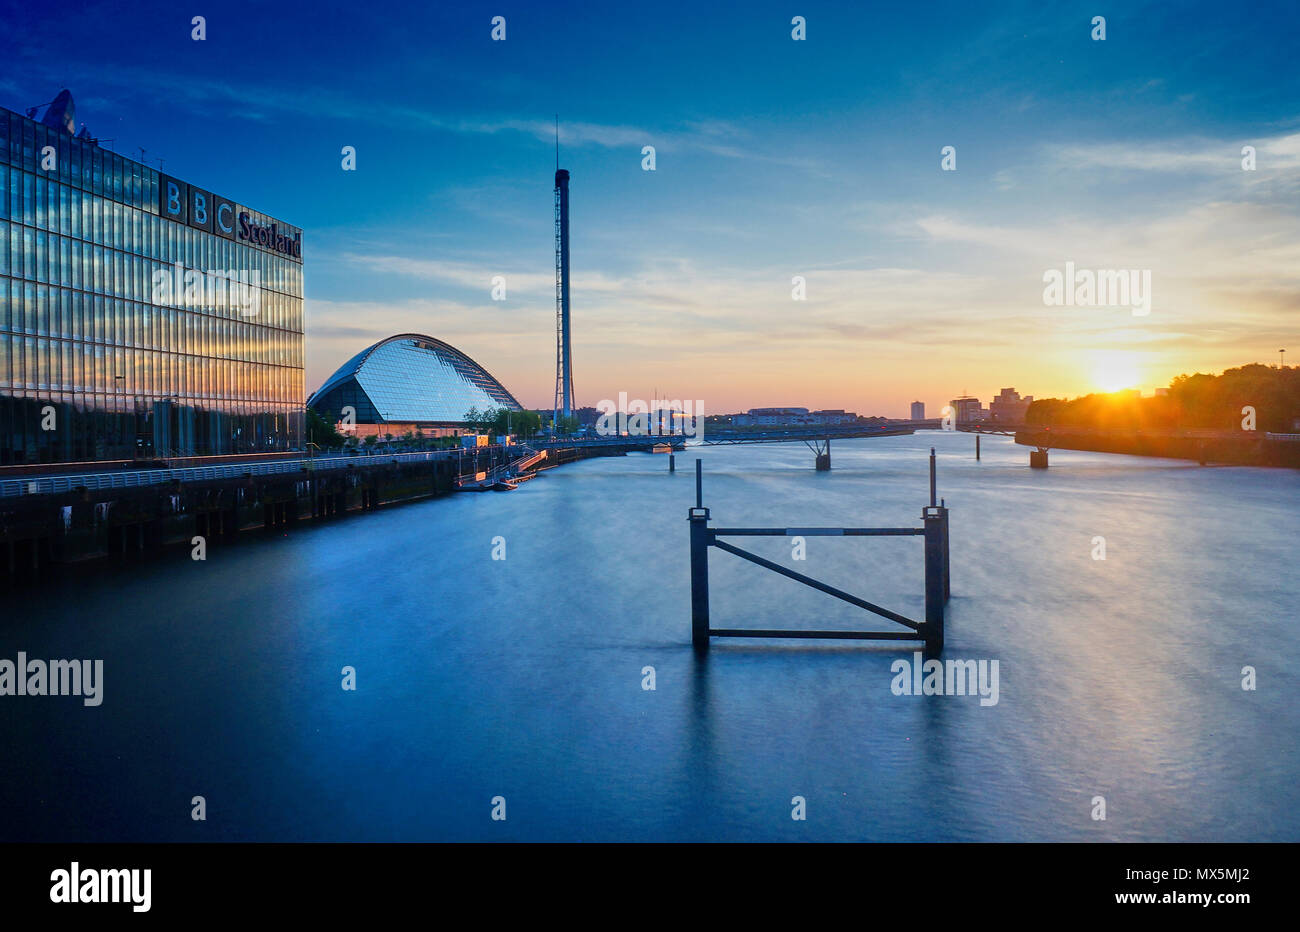 Coucher de soleil sur la rivière Clyde en vue sur le bâtiment du siège de la BBC Ecosse, Science Centre de Glasgow, l'Écosse et la Tour Banque D'Images